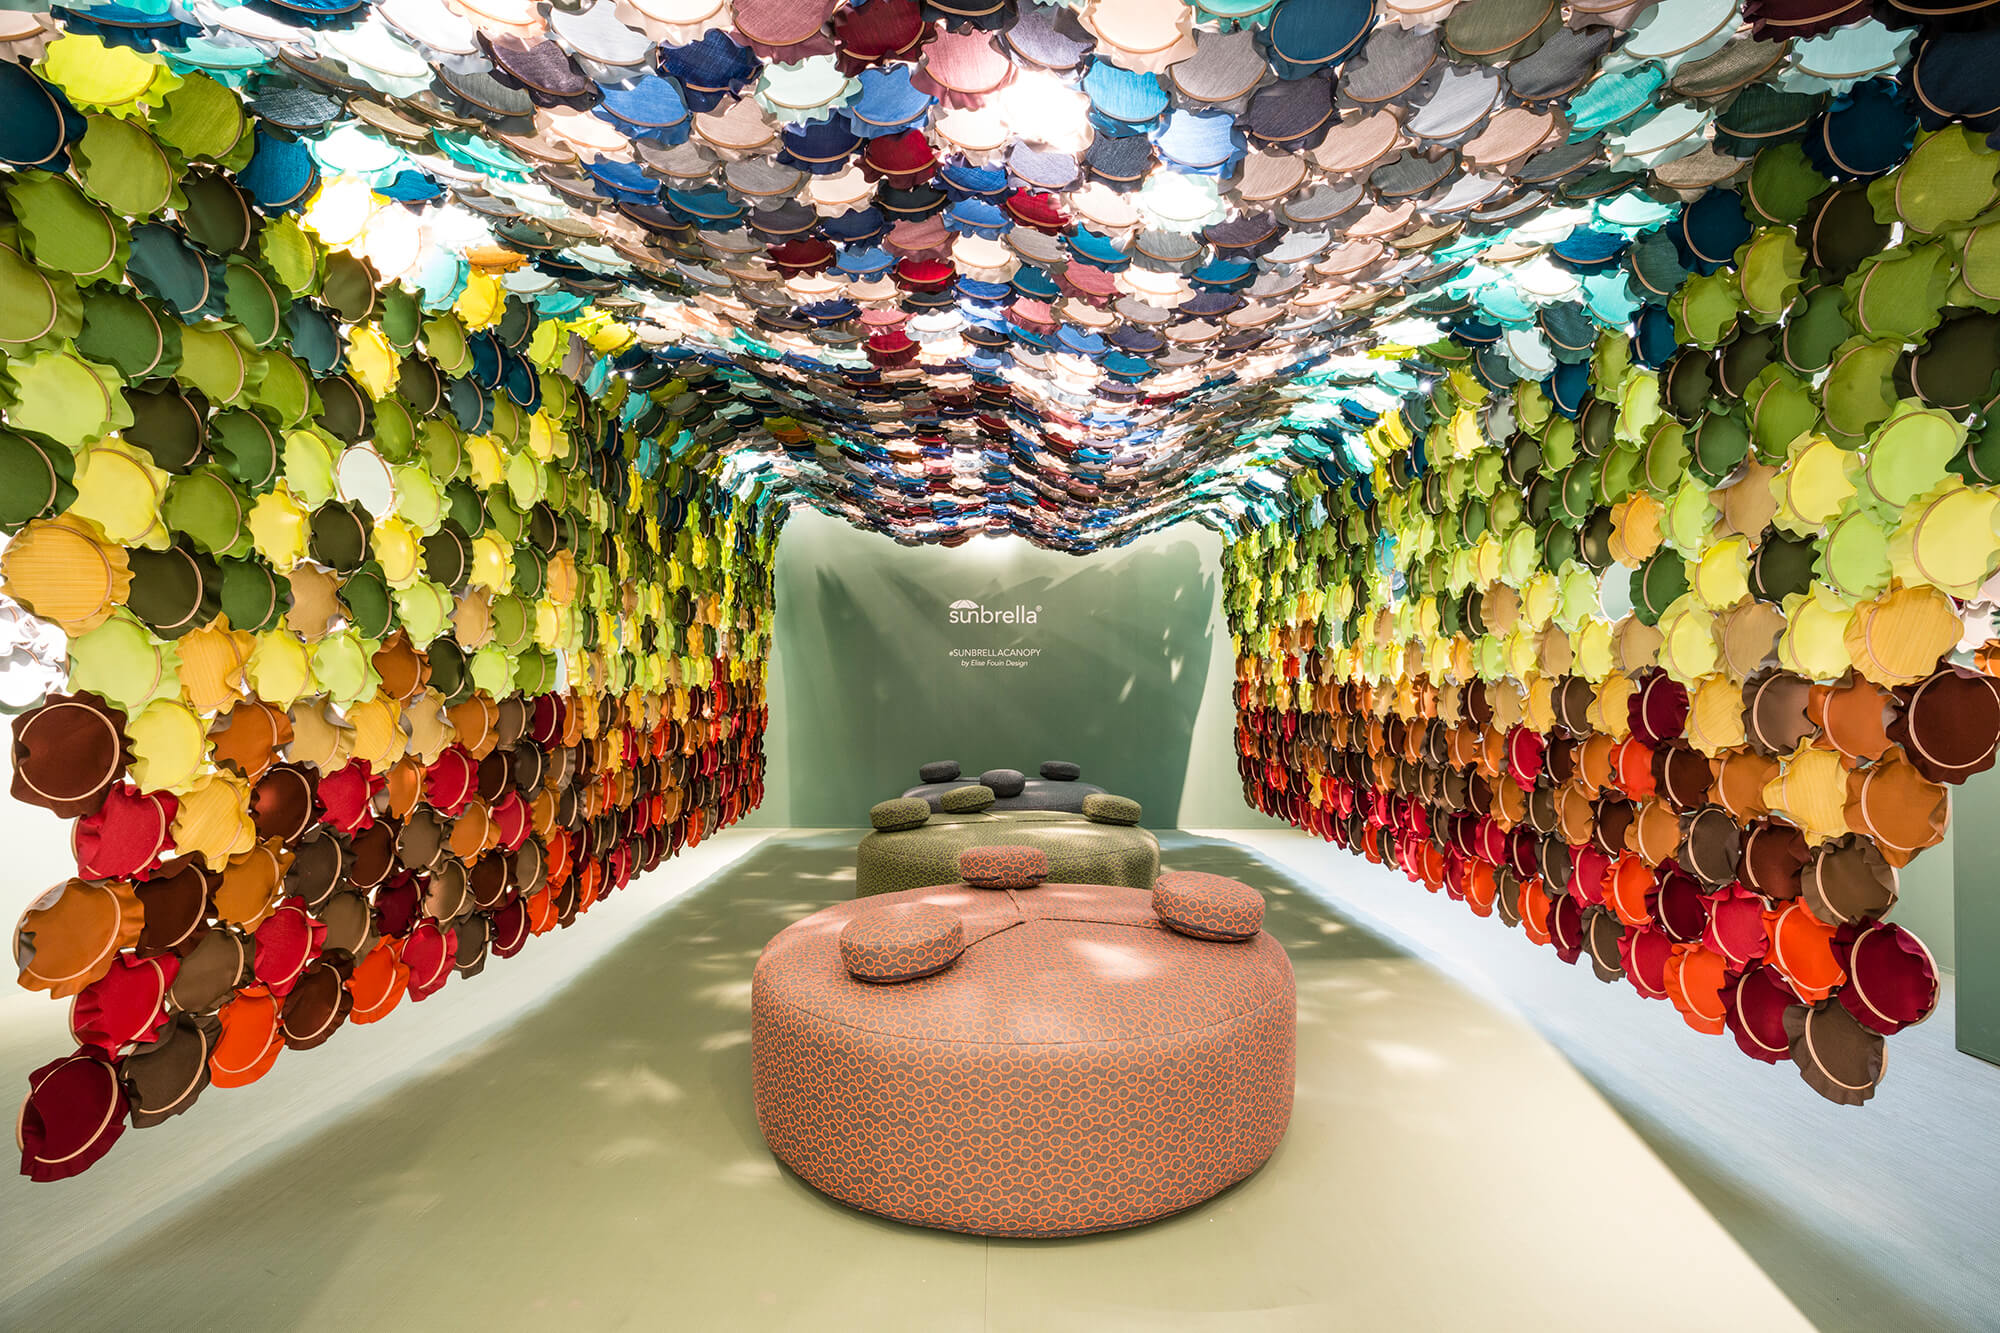 Instalacja artystyczna wykorzystująca kolorowe tkaniny Sunbrella i tamborki do wyszywania.